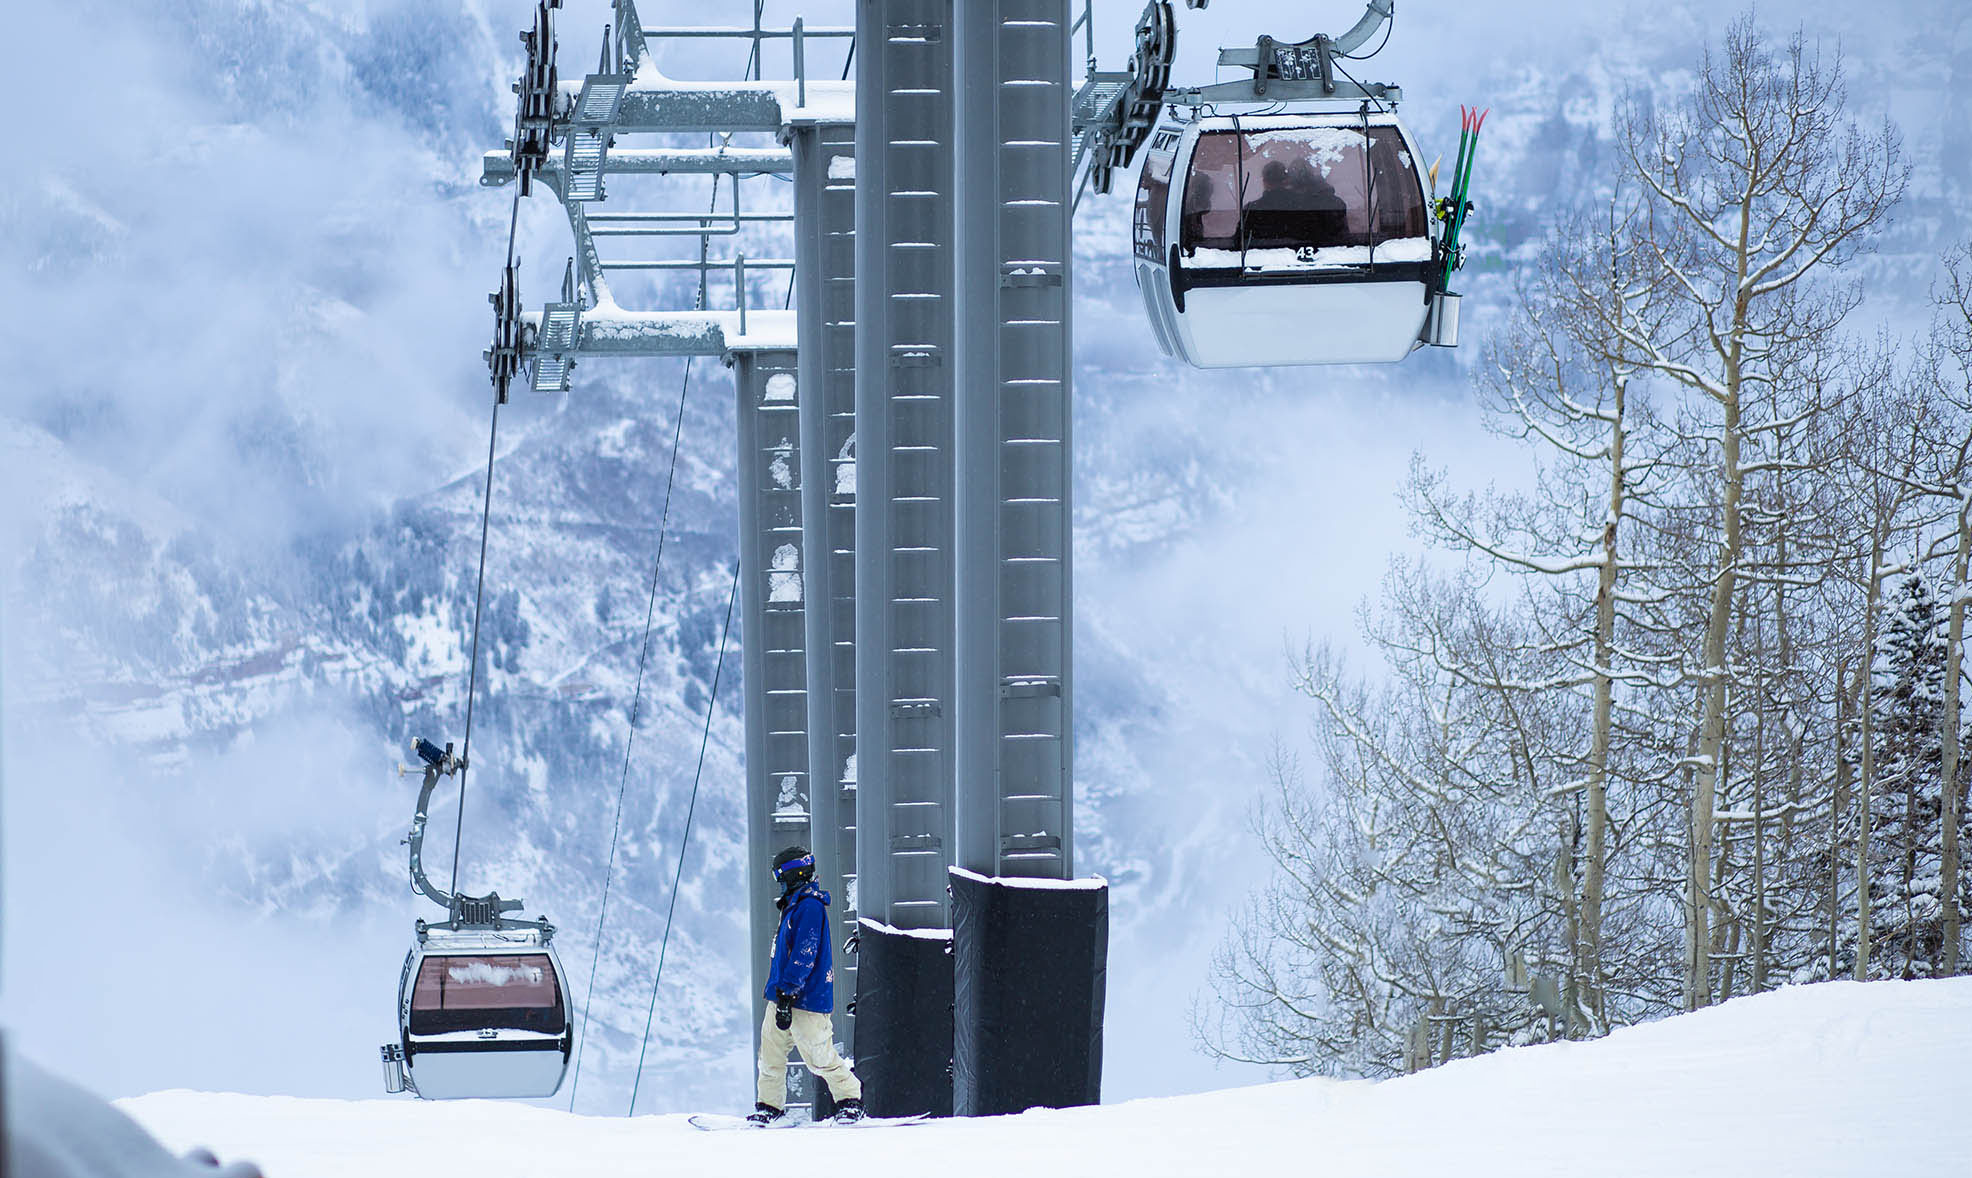 Ski Lifts at Telluride Ski Resort